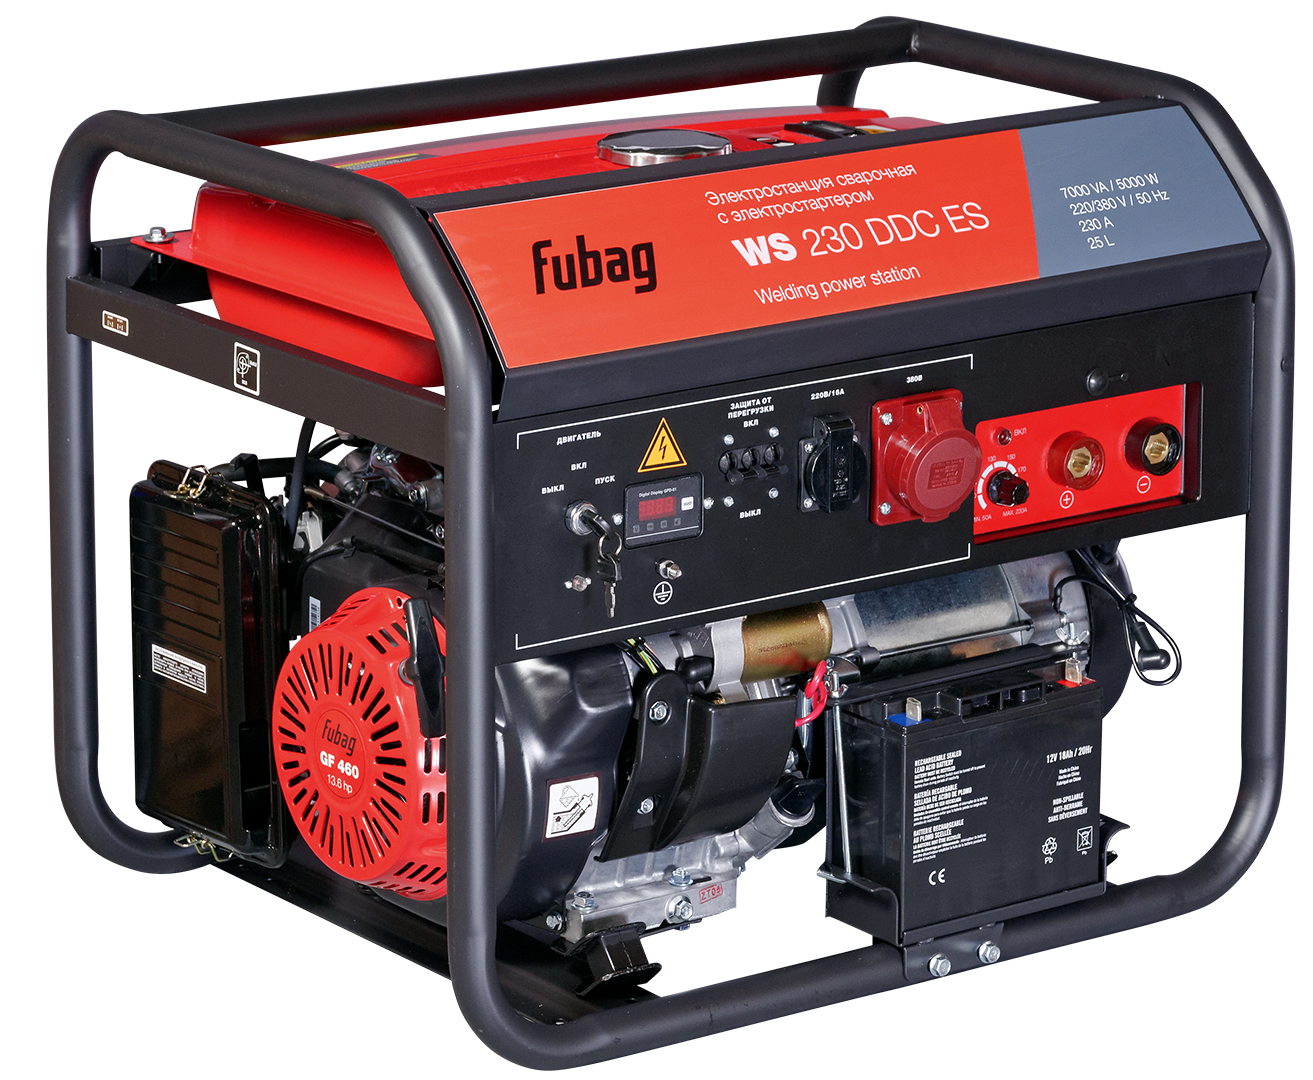 Сварочный генератор FUBAG WS 230 DDC ES с электростартером - фото